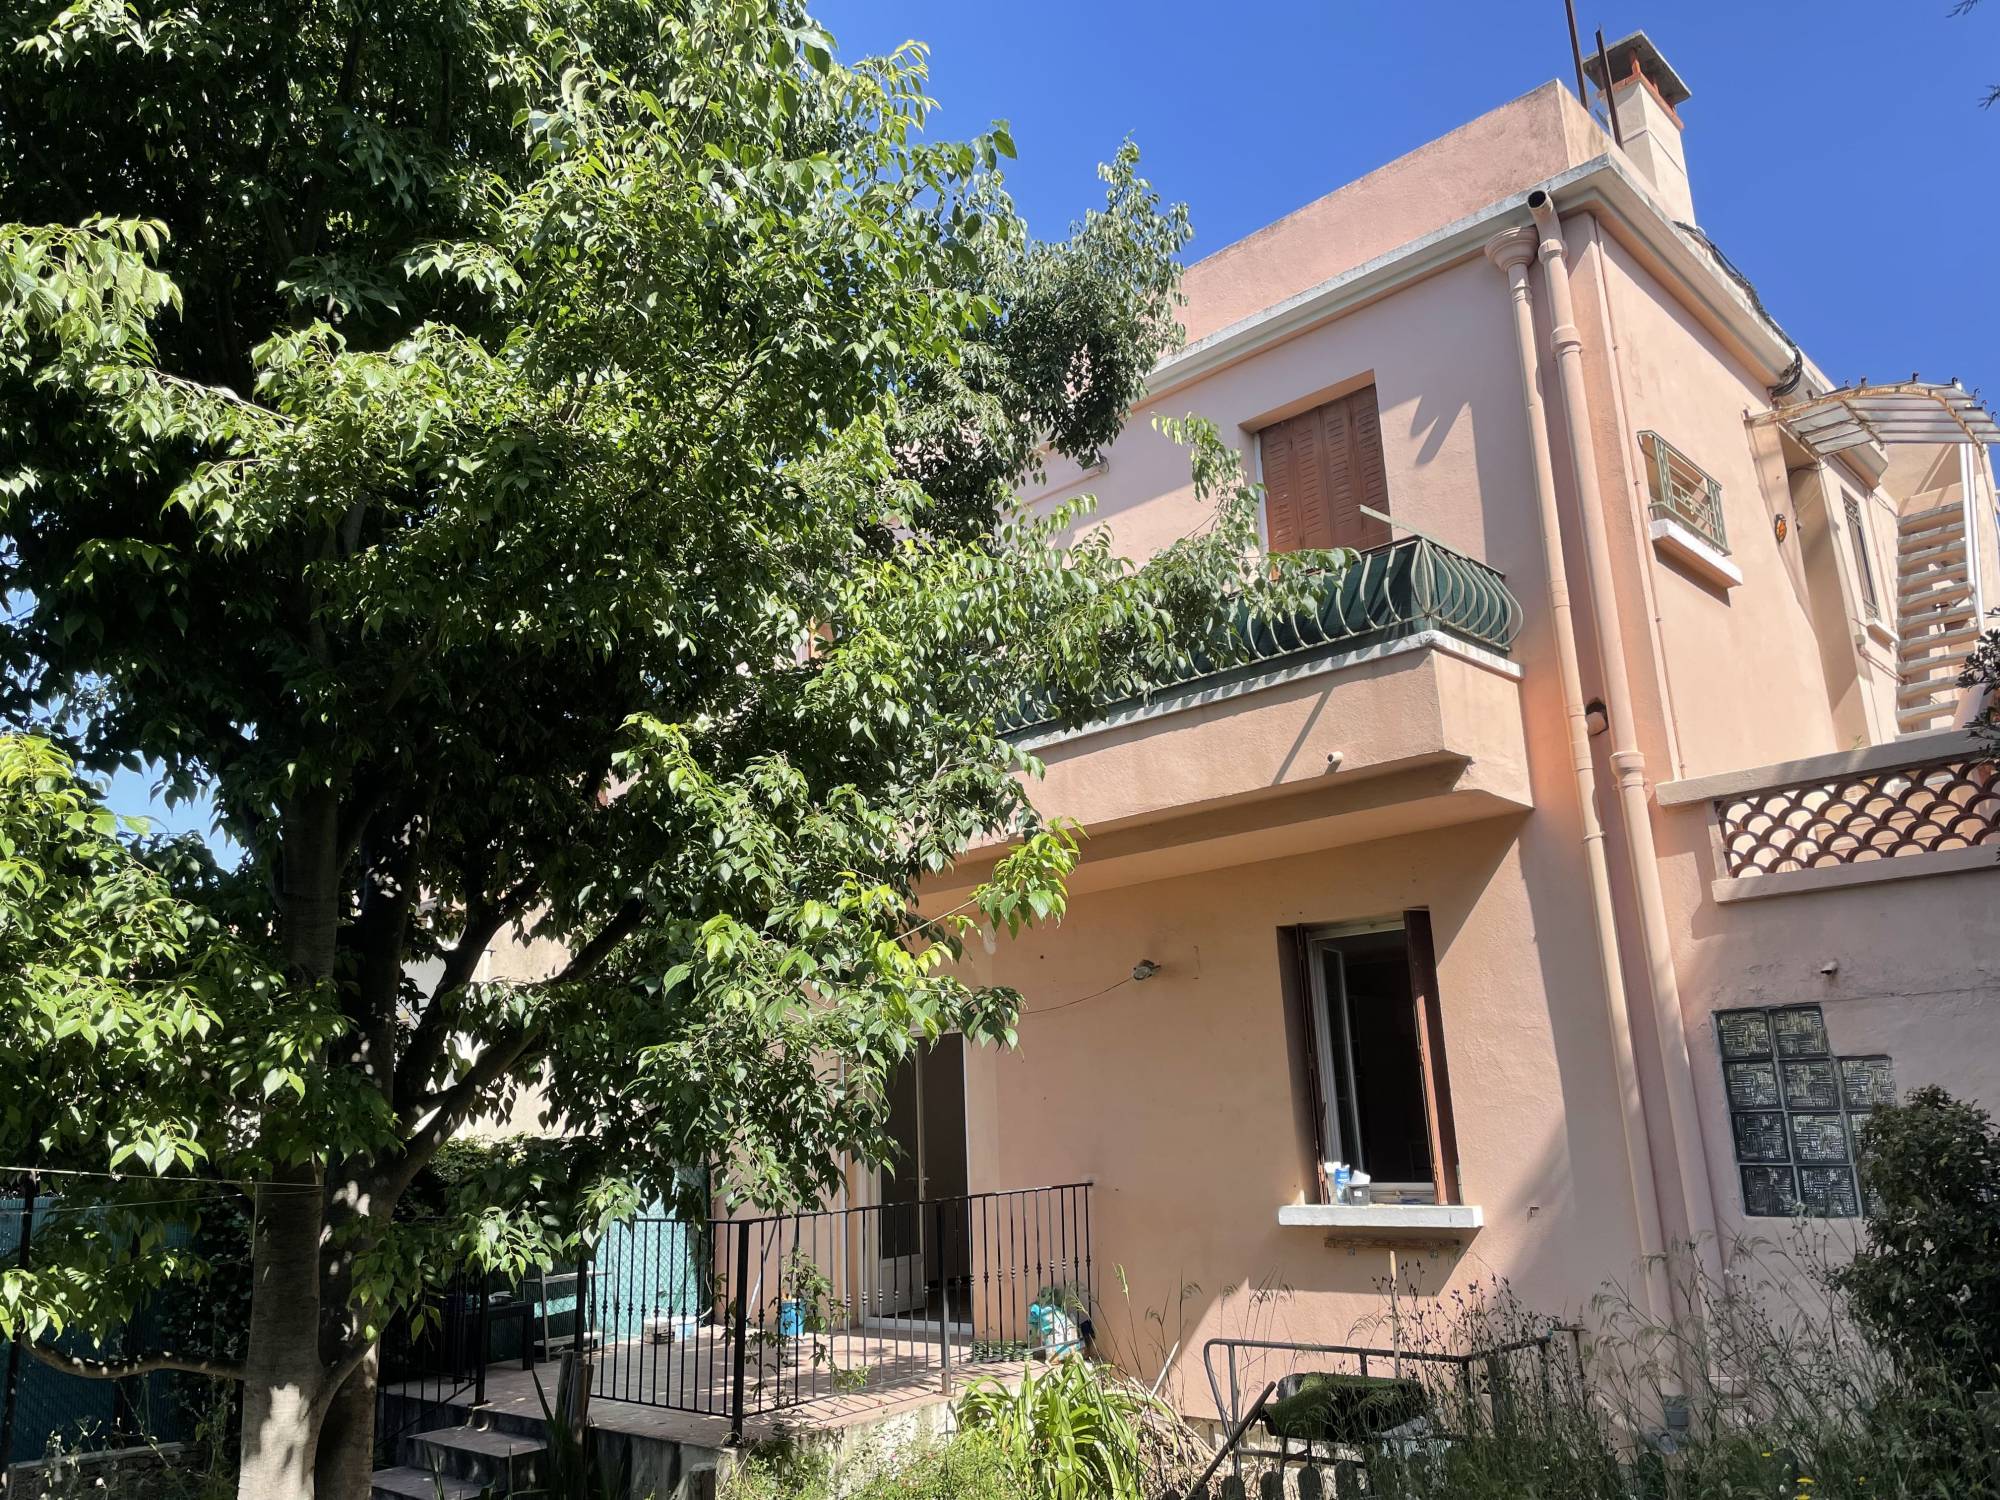 A vendre rez de chaussée de villa avec jardin, appartement de 63 m² sur le secteur de Bois Luzy 13012 Marseille